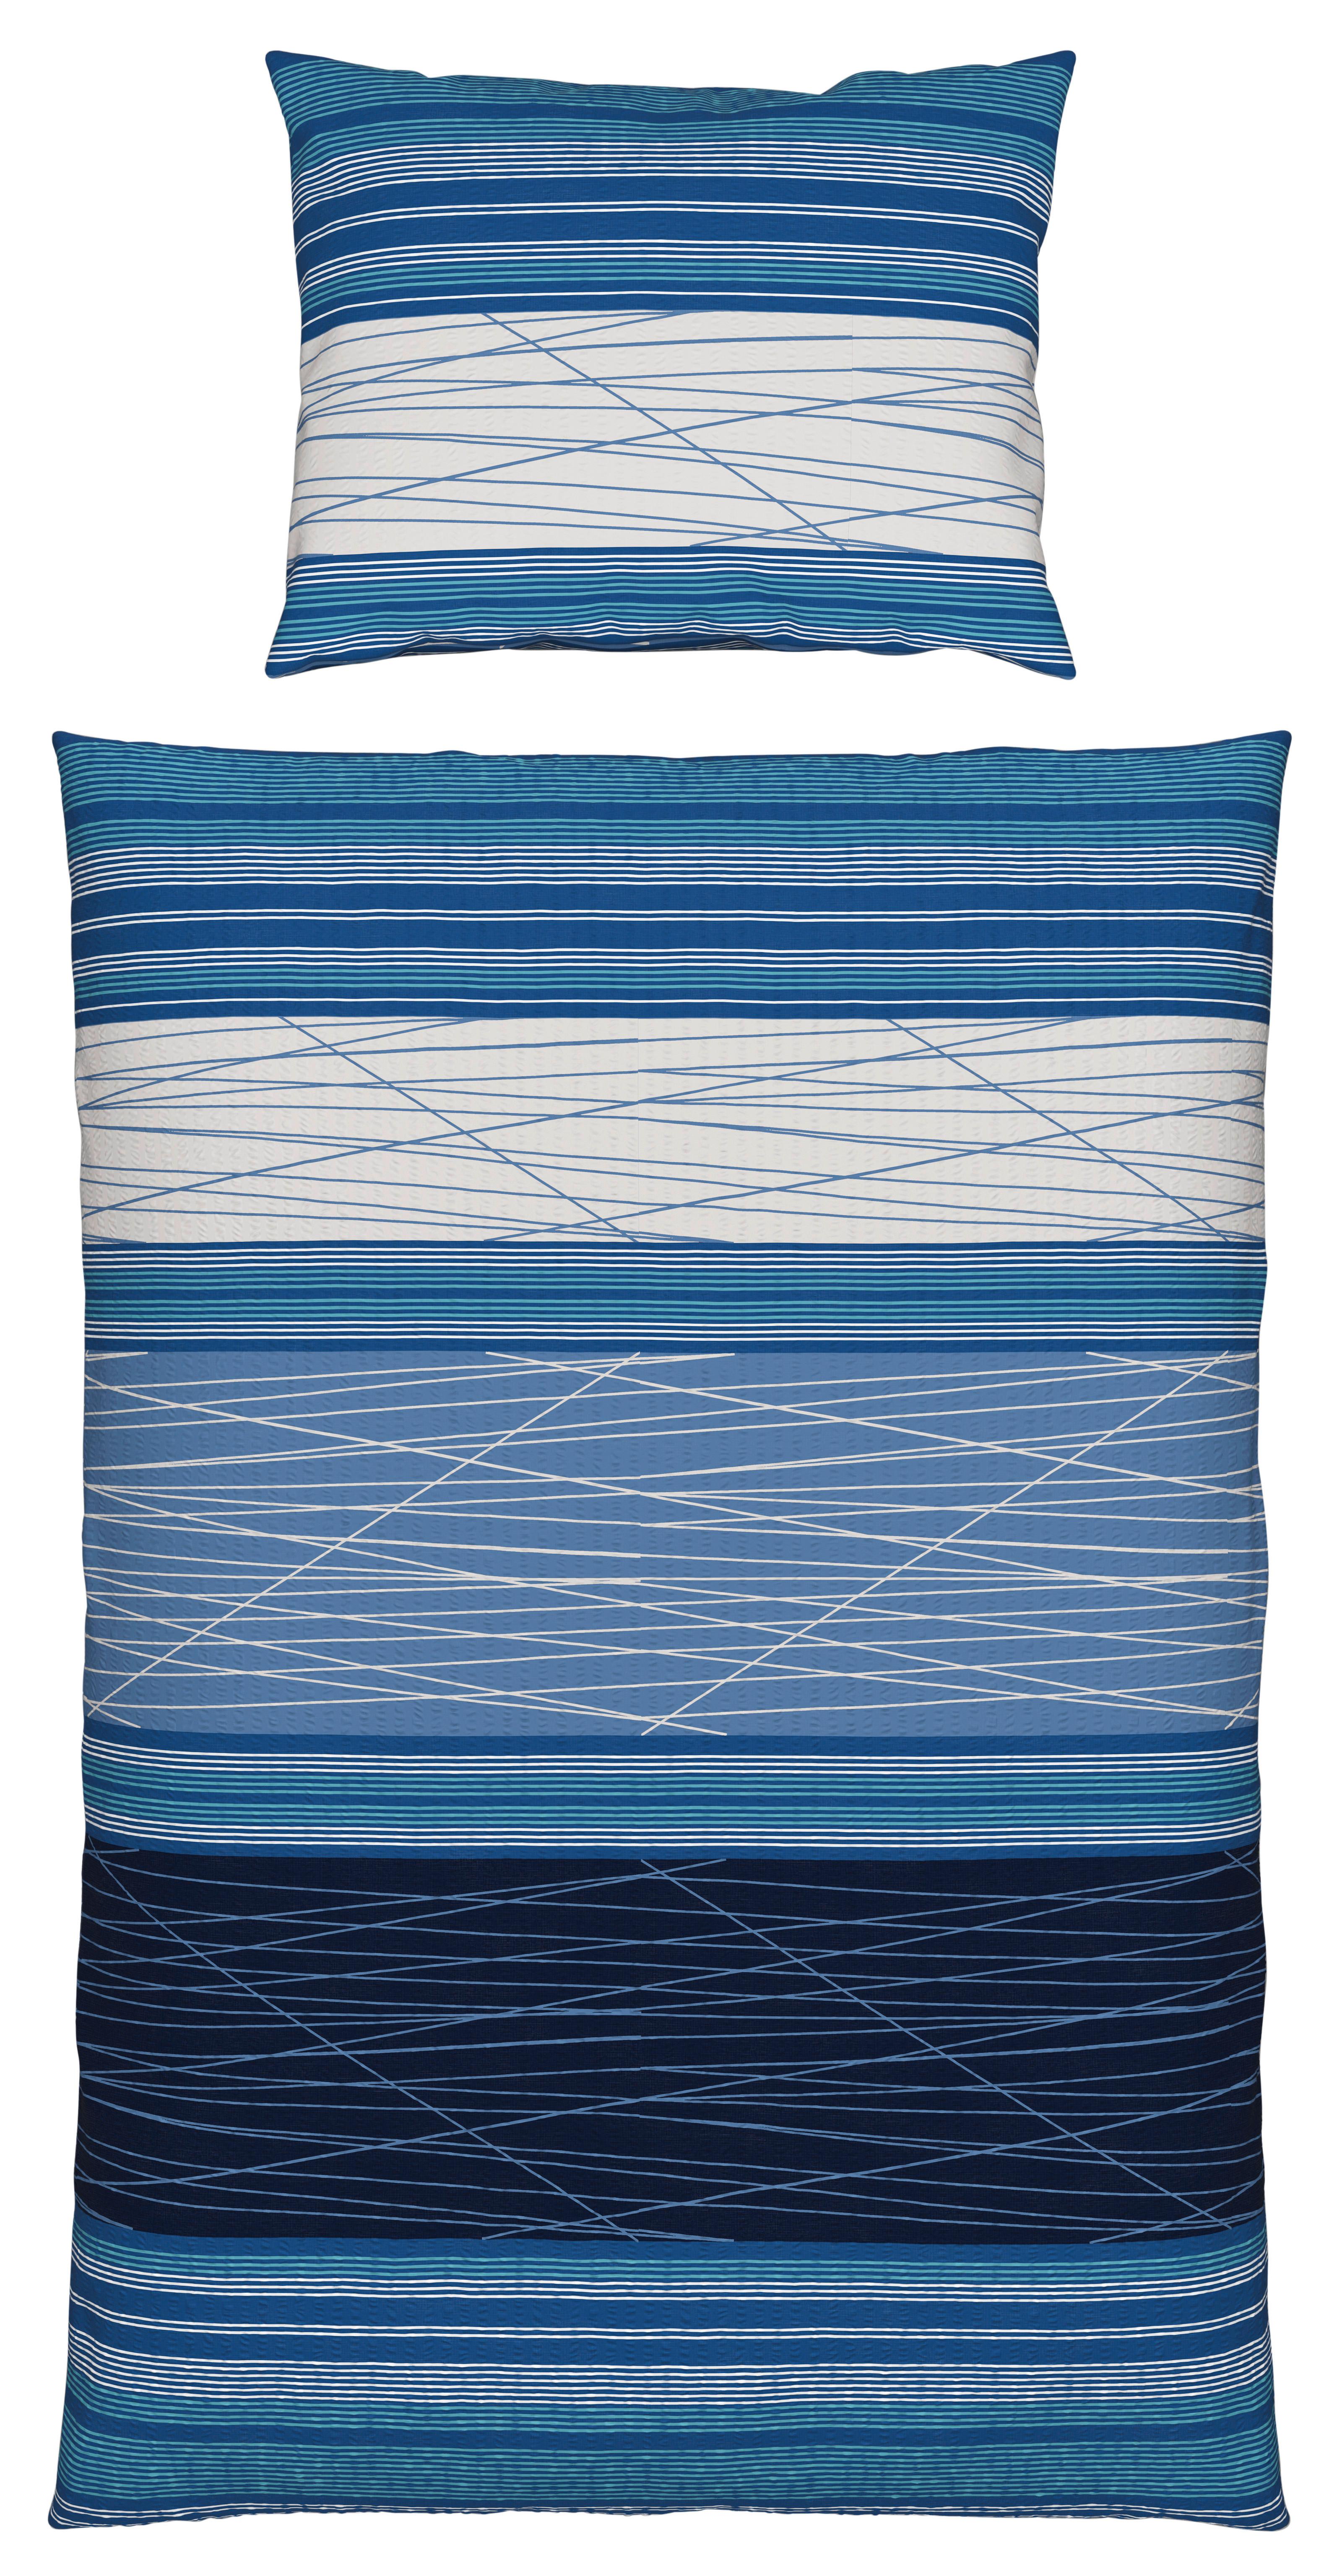 Seersucker Bettwäsche 140x 200 cm Emina Blau Streifen - Blau, MODERN, Textil (140/200cm) - Luca Bessoni